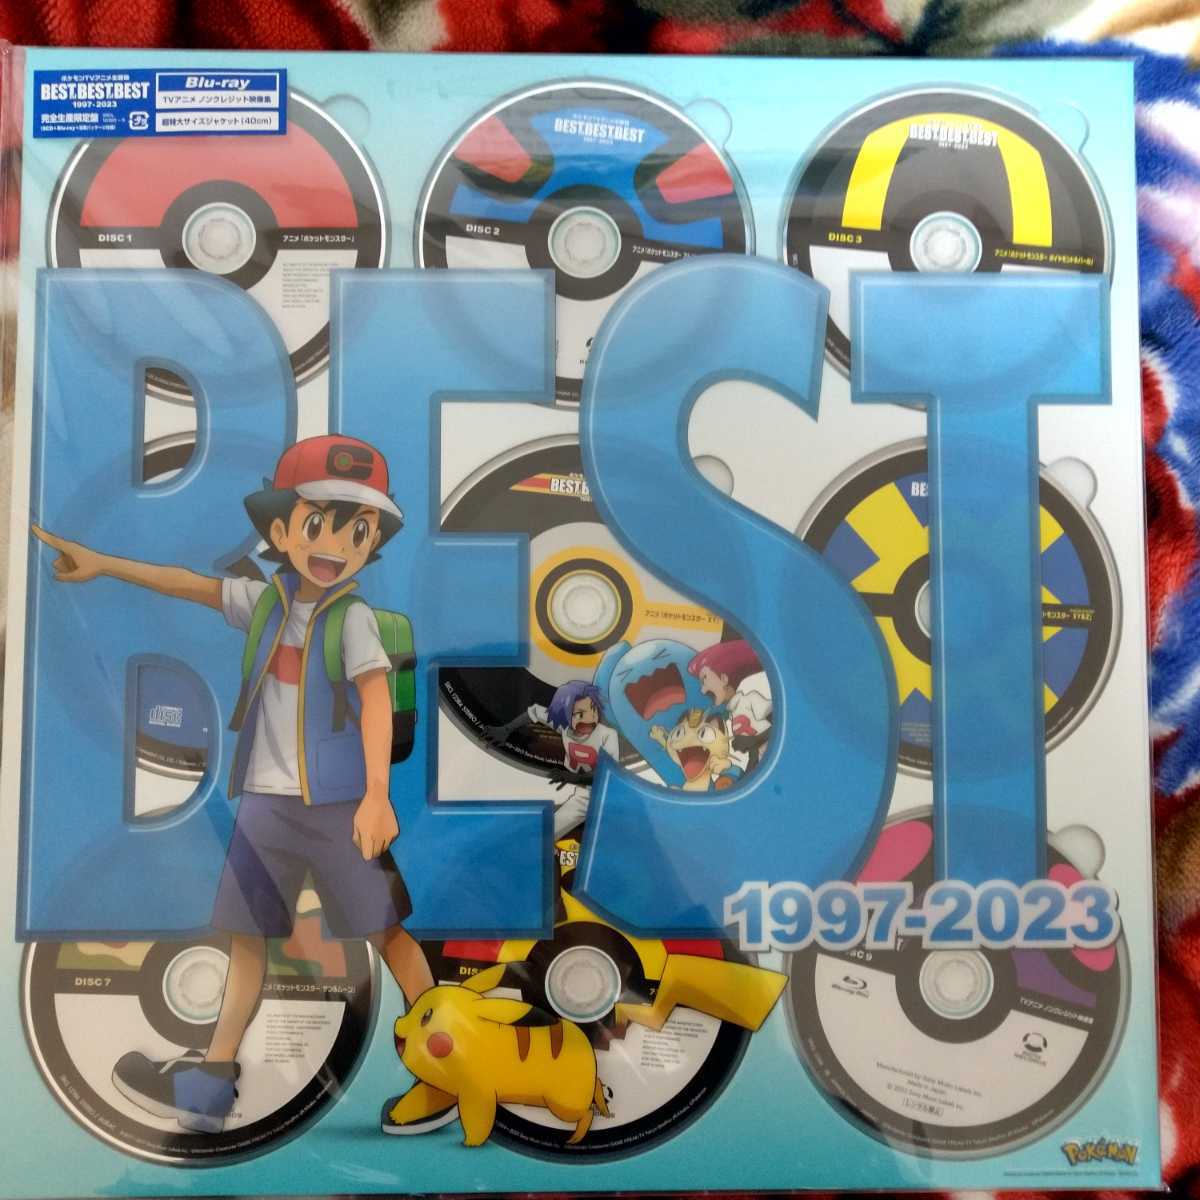 ポケモンTVアニメ主題歌 BEST OF BEST OF BEST 1997-2023 Blu-ray 完全